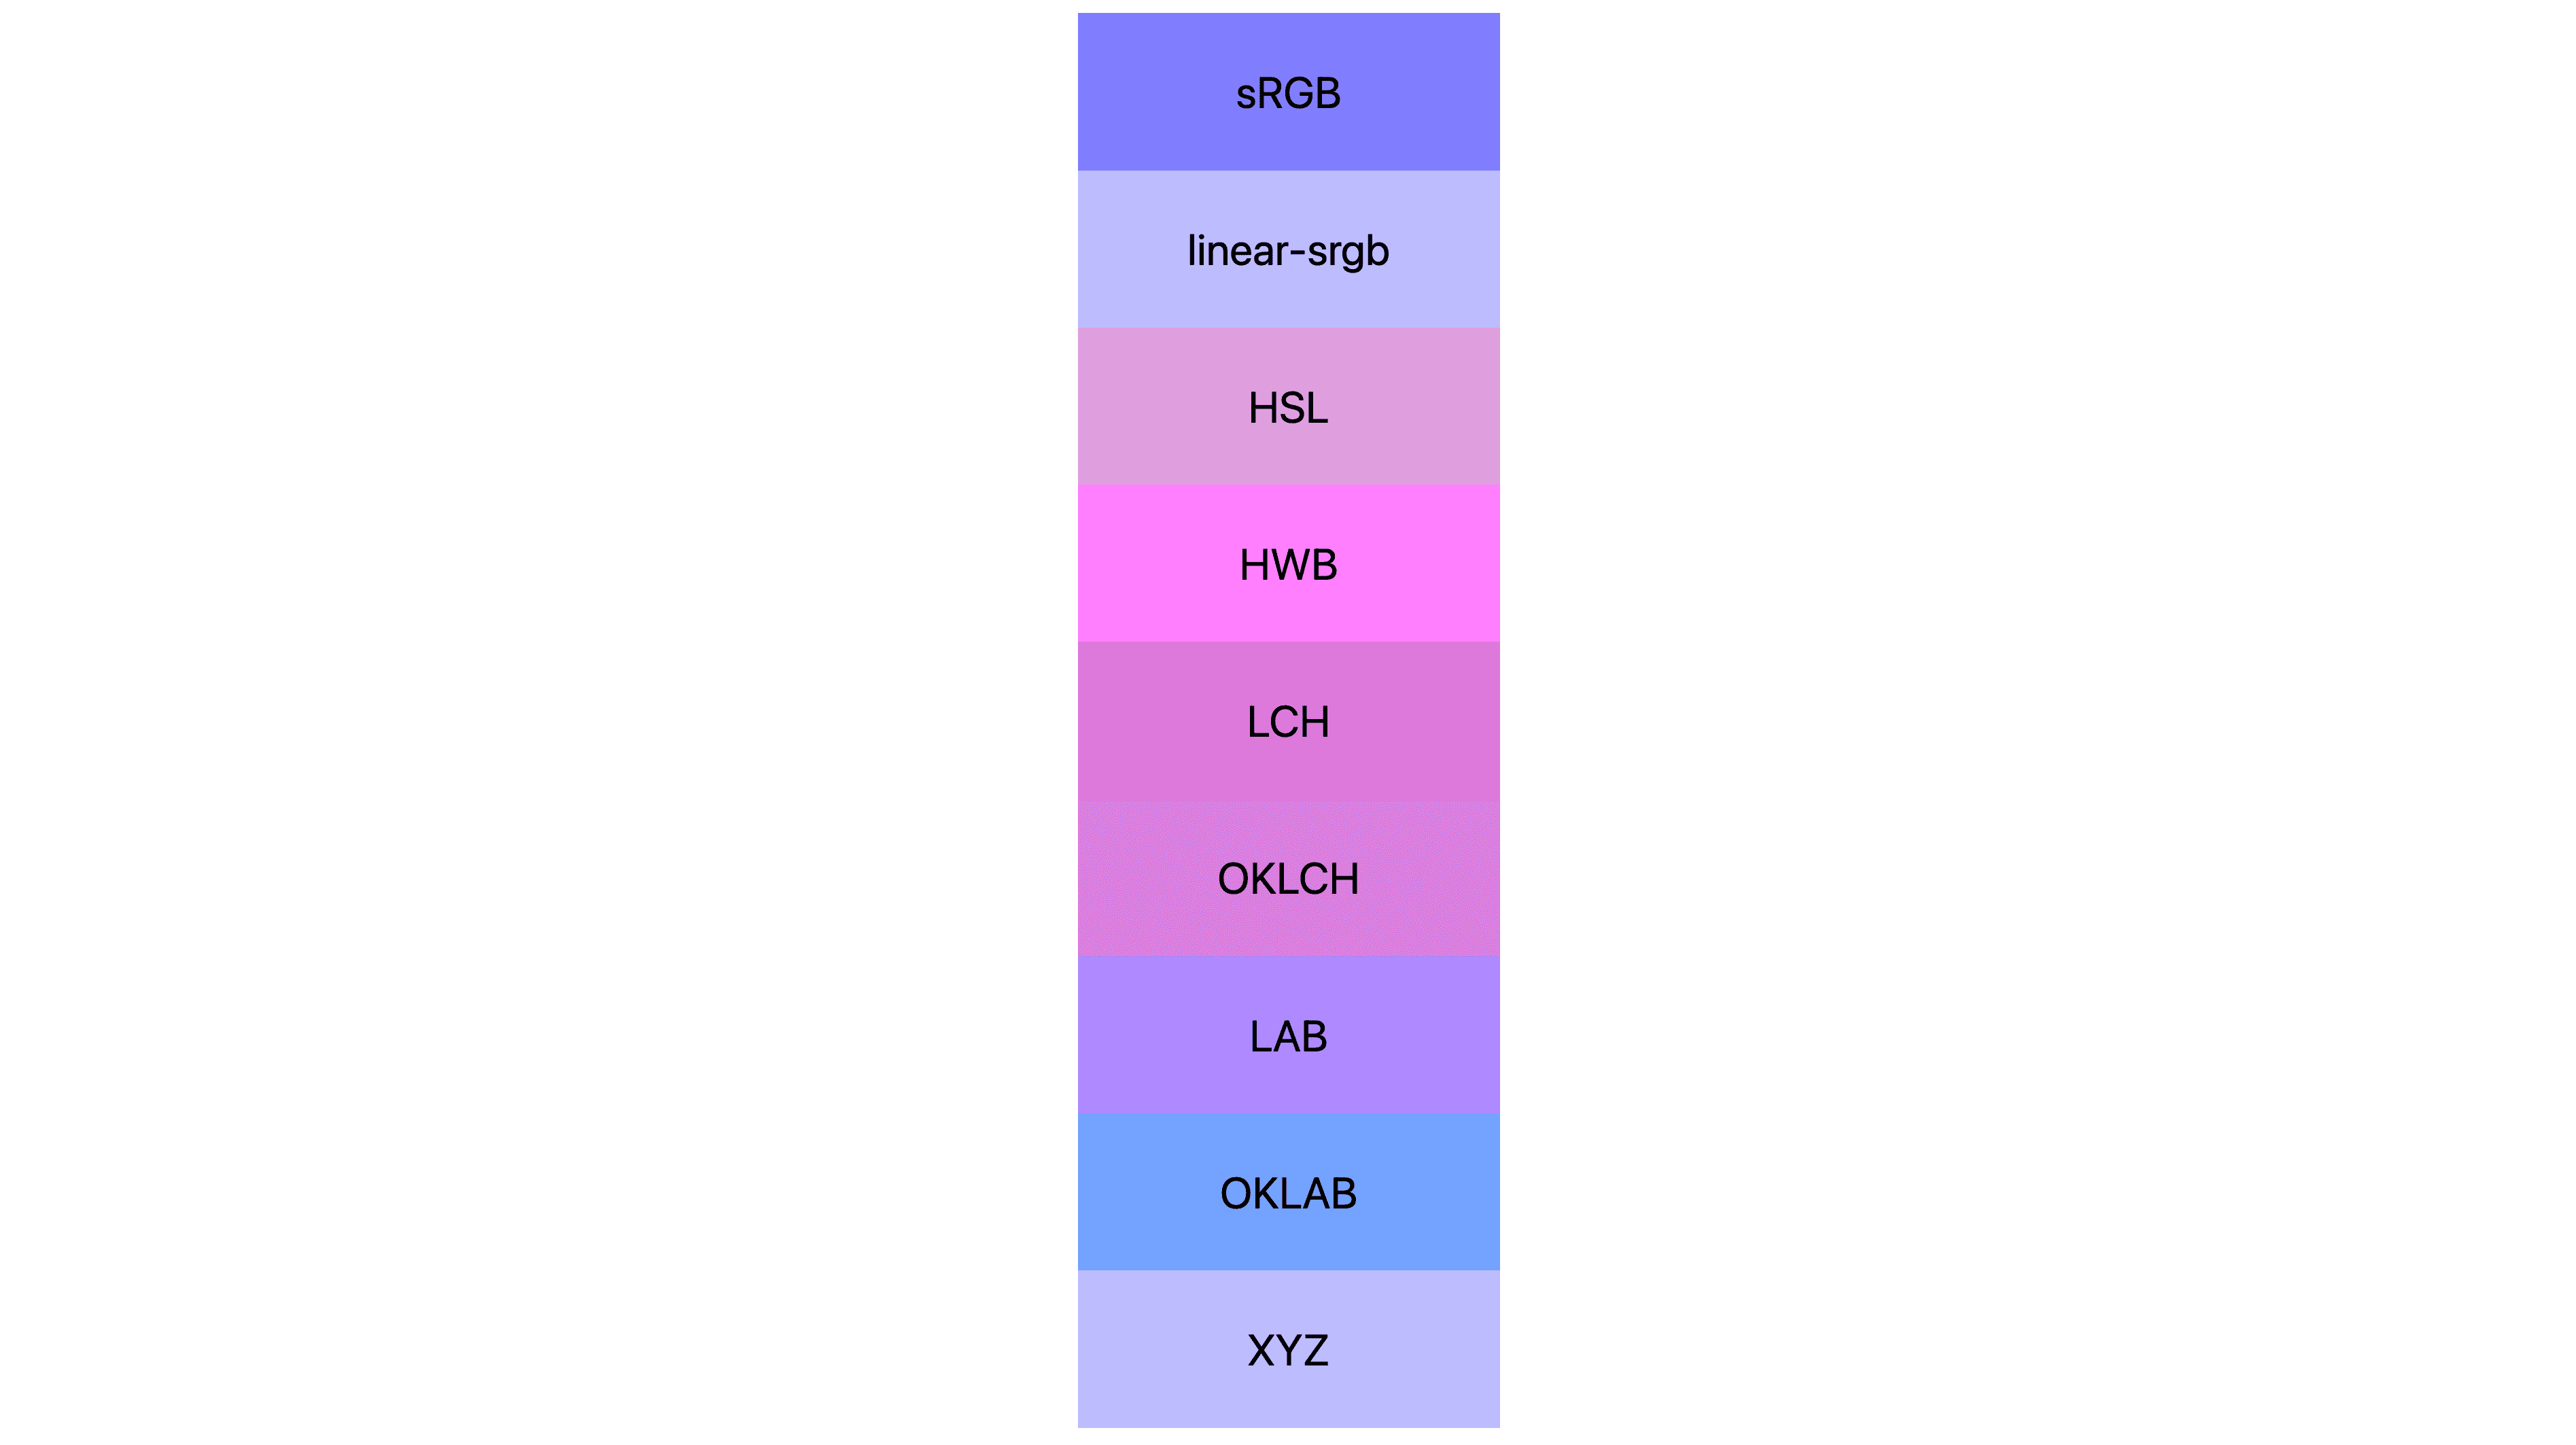 Se muestran 7 espacios de color (srgb, linear-srgb, lch, oklch, lab, oklab, xyz) cada uno con resultados diferentes. Muchas son de color rosa o púrpura, y otras, en realidad, son azules.